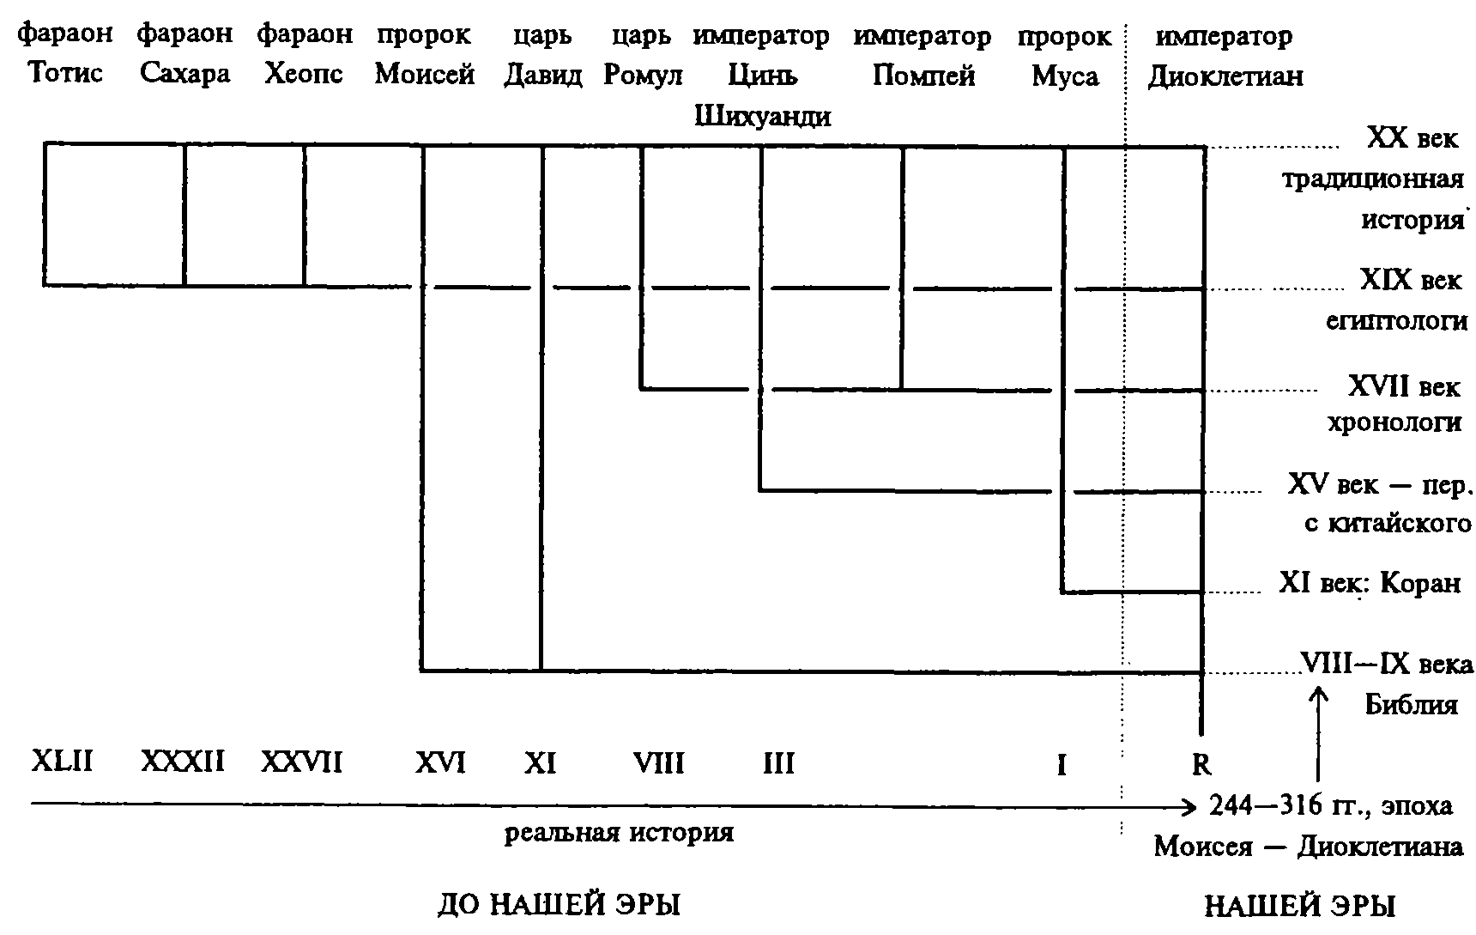 В верхней строчке графика представлены имена правителей известных по - фото 9